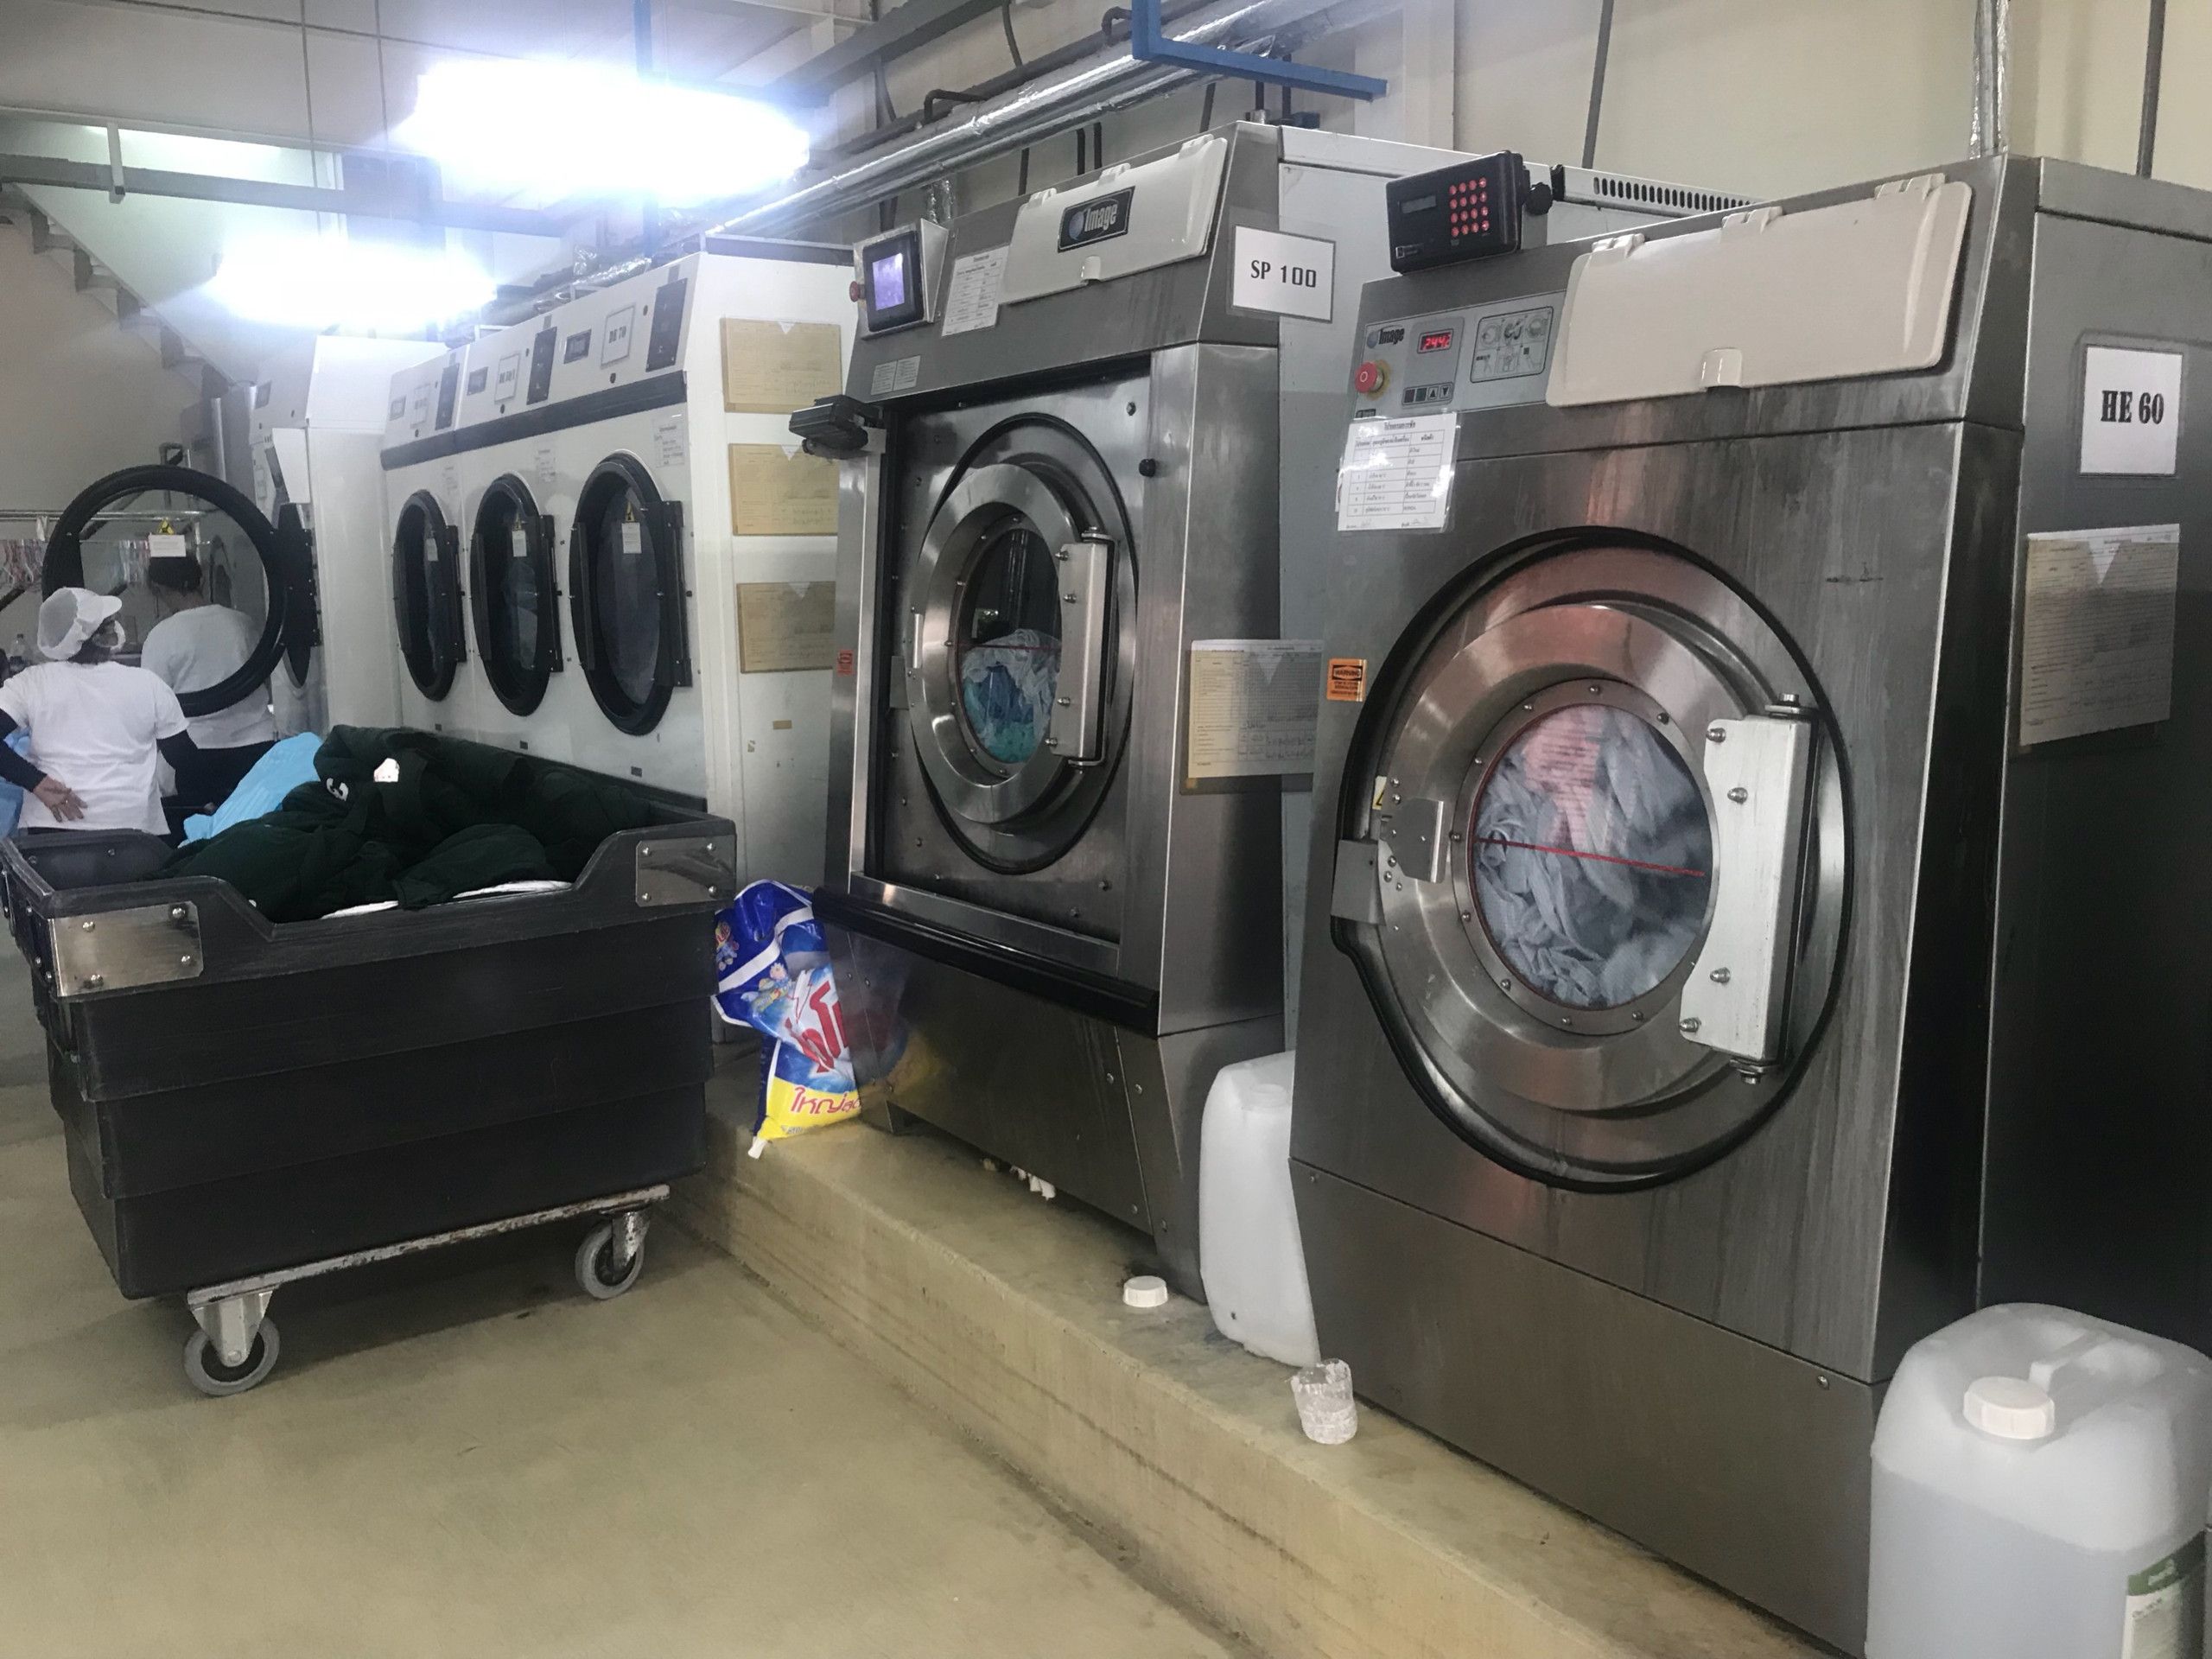 Sửa chữa máy giặt công nghiệp nhanh chóng, hiệu quả, tiết kiệm chi phí